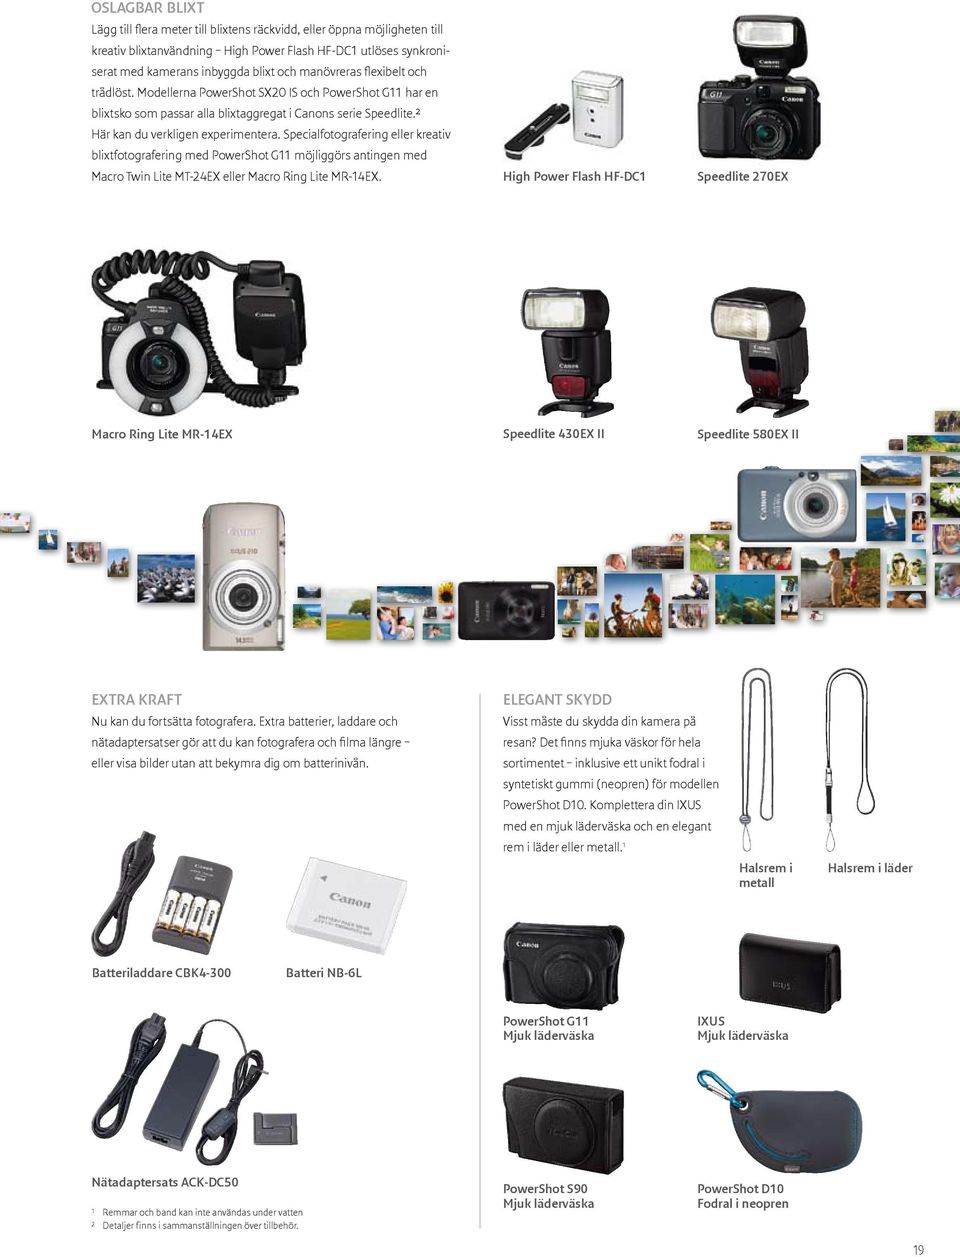 Specialfotografering eller kreativ blixtfotografering med PowerShot G11 möjliggörs antingen med Macro Twin Lite MT-24EX eller Macro Ring Lite MR-14EX.